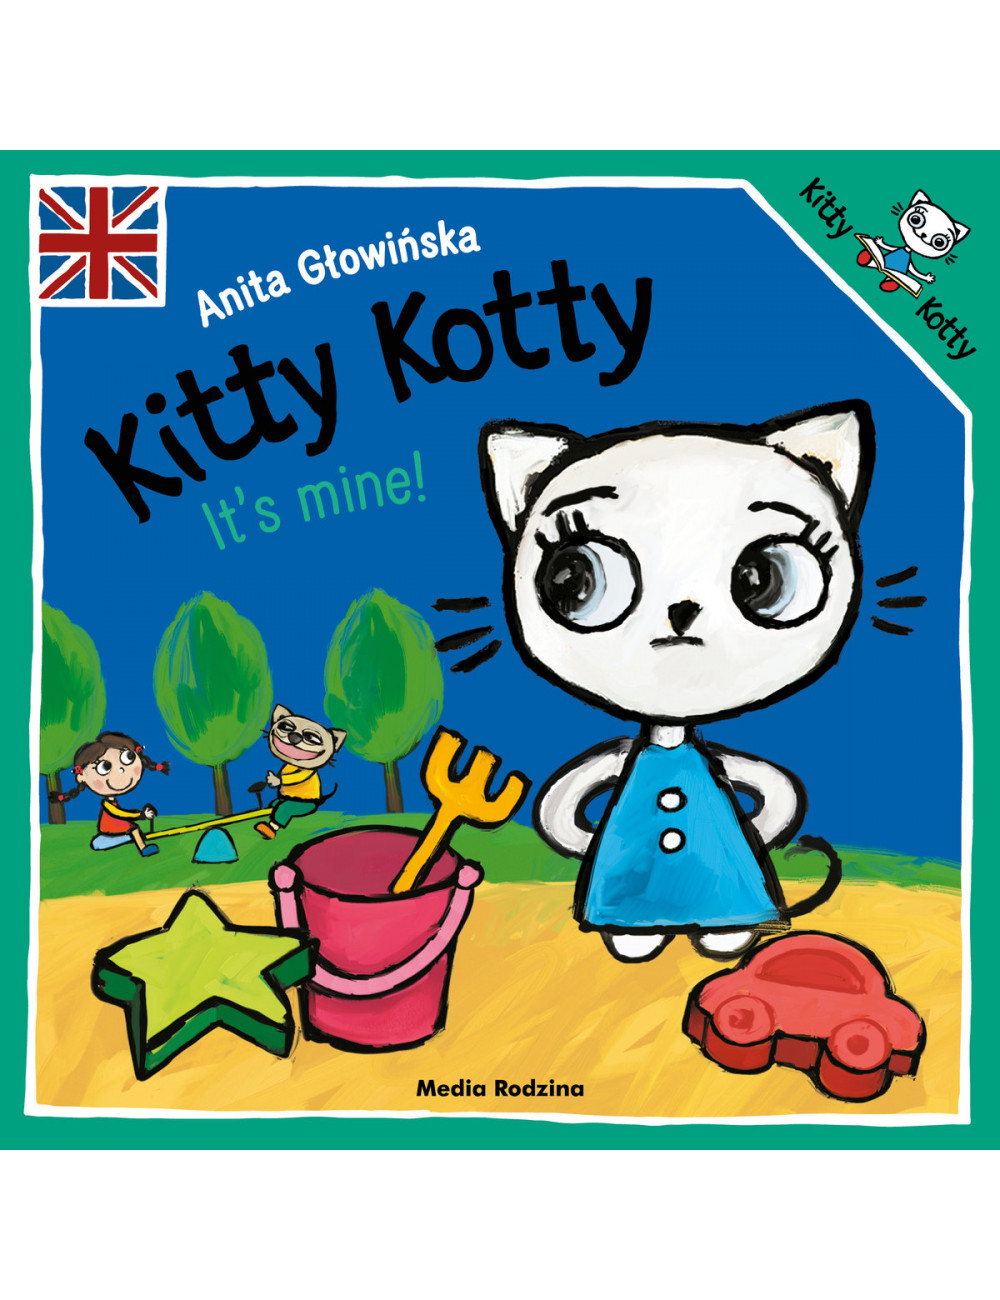 Kitty Kotty. It's mine!,...